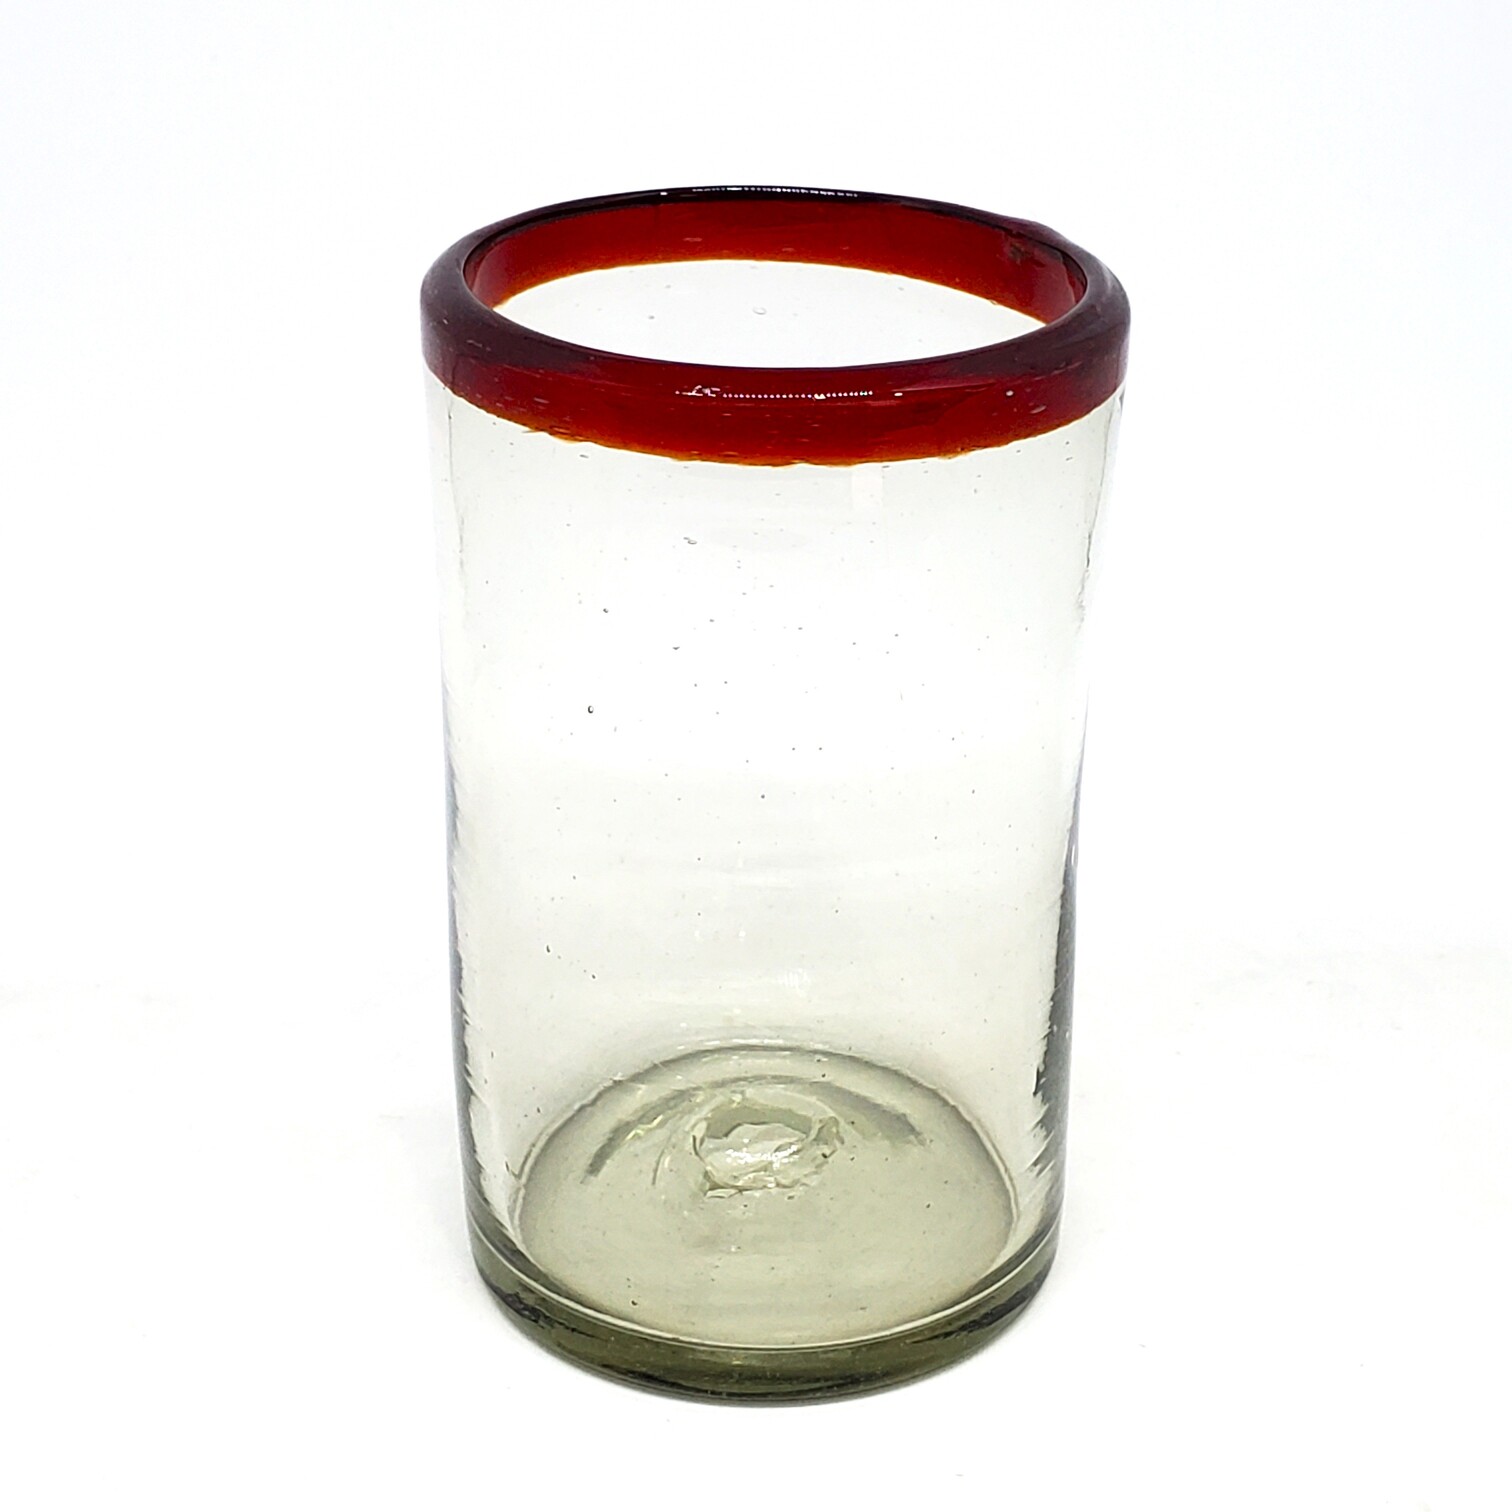 Ofertas / vasos grandes con borde rojo rub� / �stos artesanales vasos le dar�n un toque cl�sico a su bebida favorita.